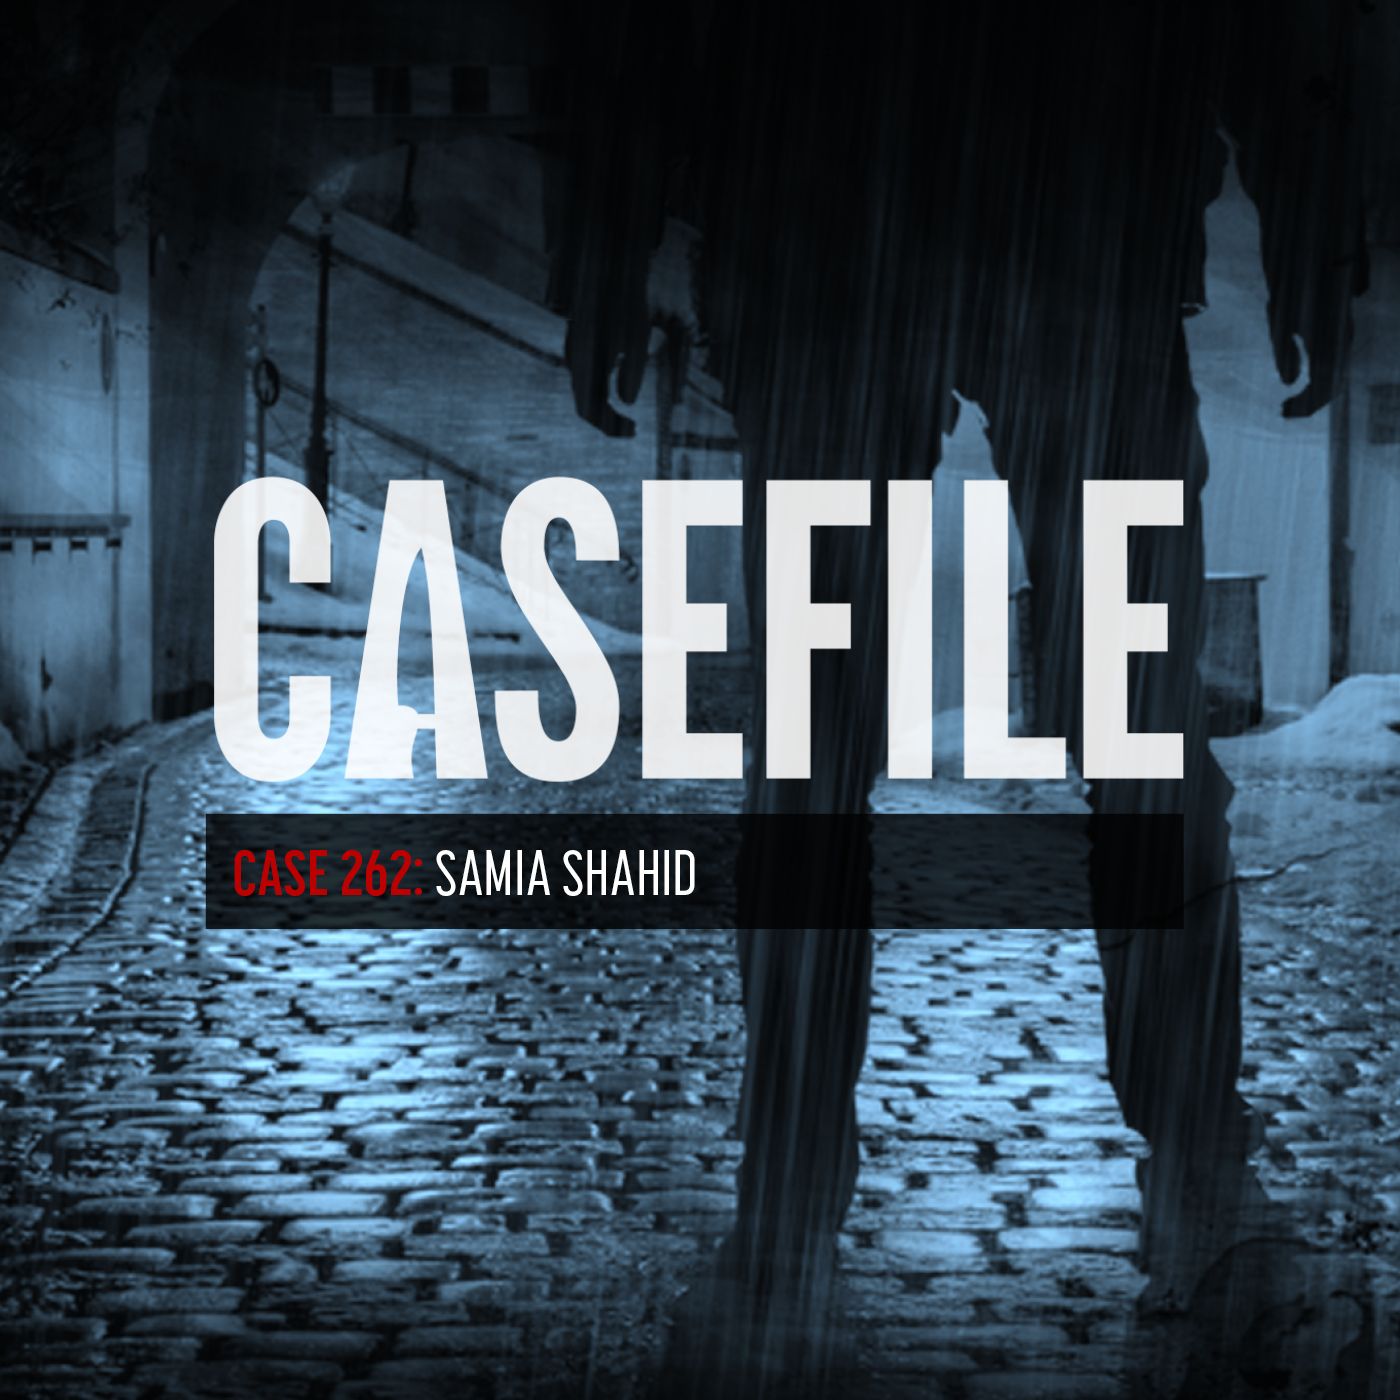 Case 262: Samia Shahid